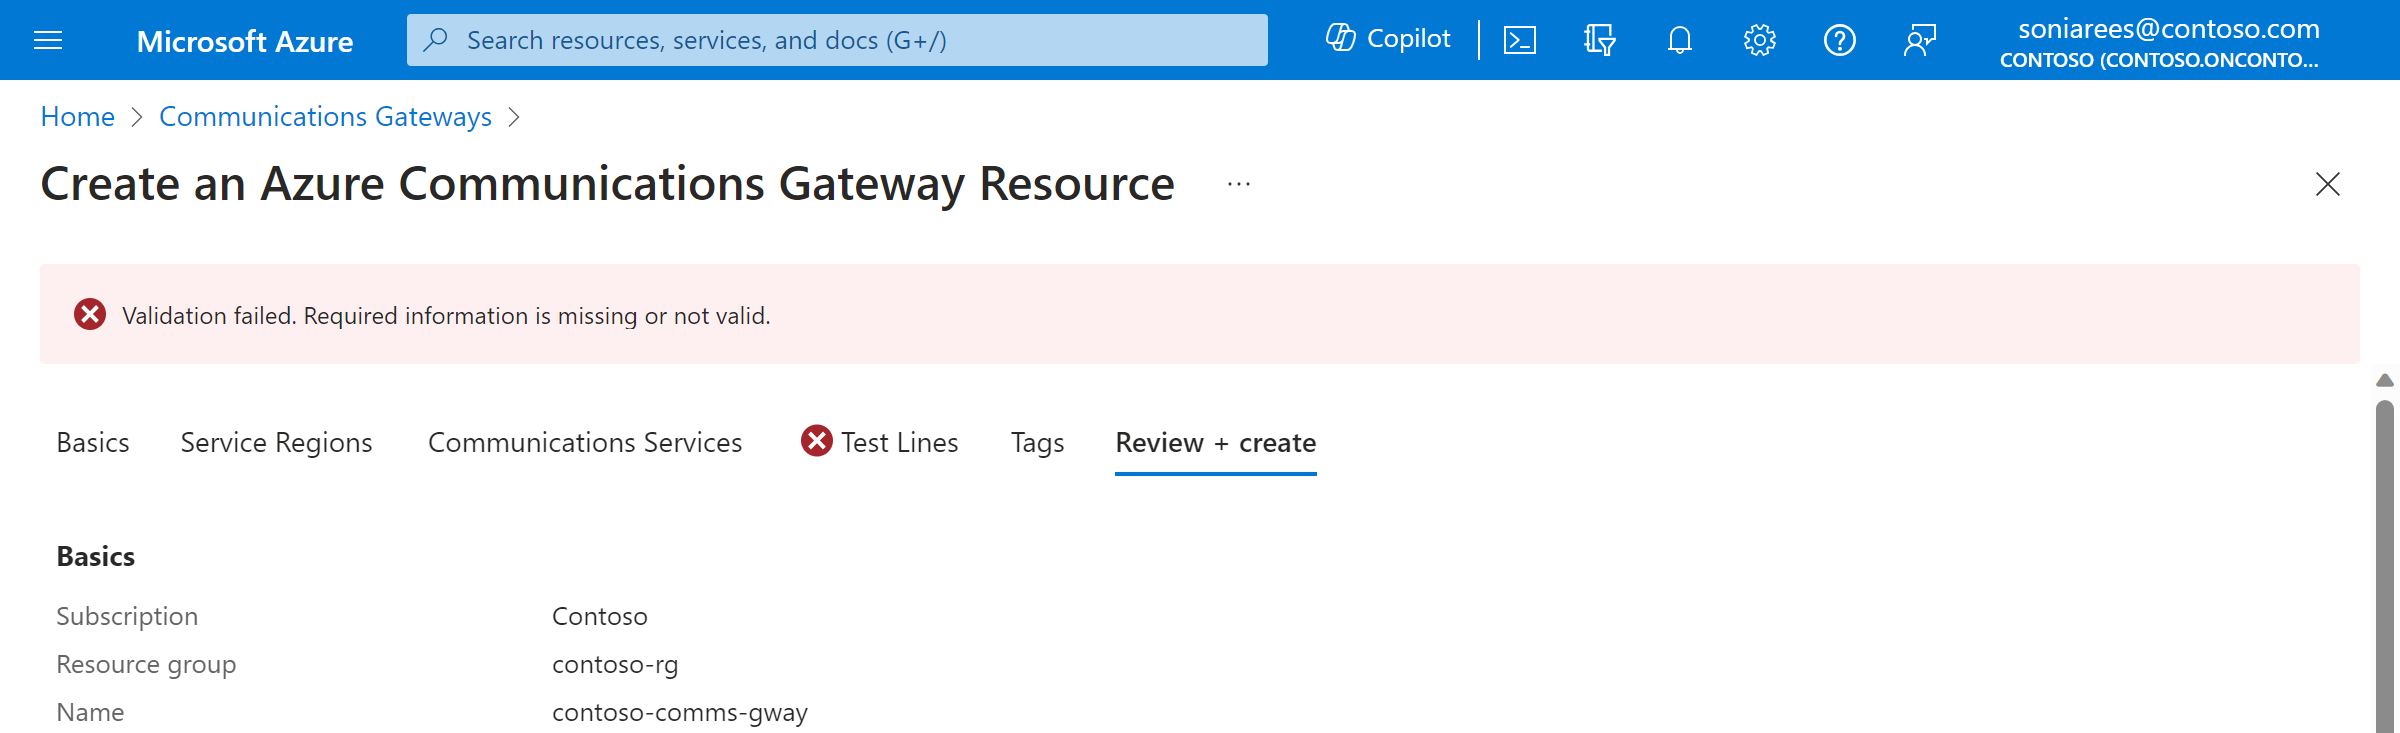 Captura de tela do portal Criar um Gateway de Comunicações do Azure, mostrando uma validação que falhou devido à falta de informações na seção Contatos.